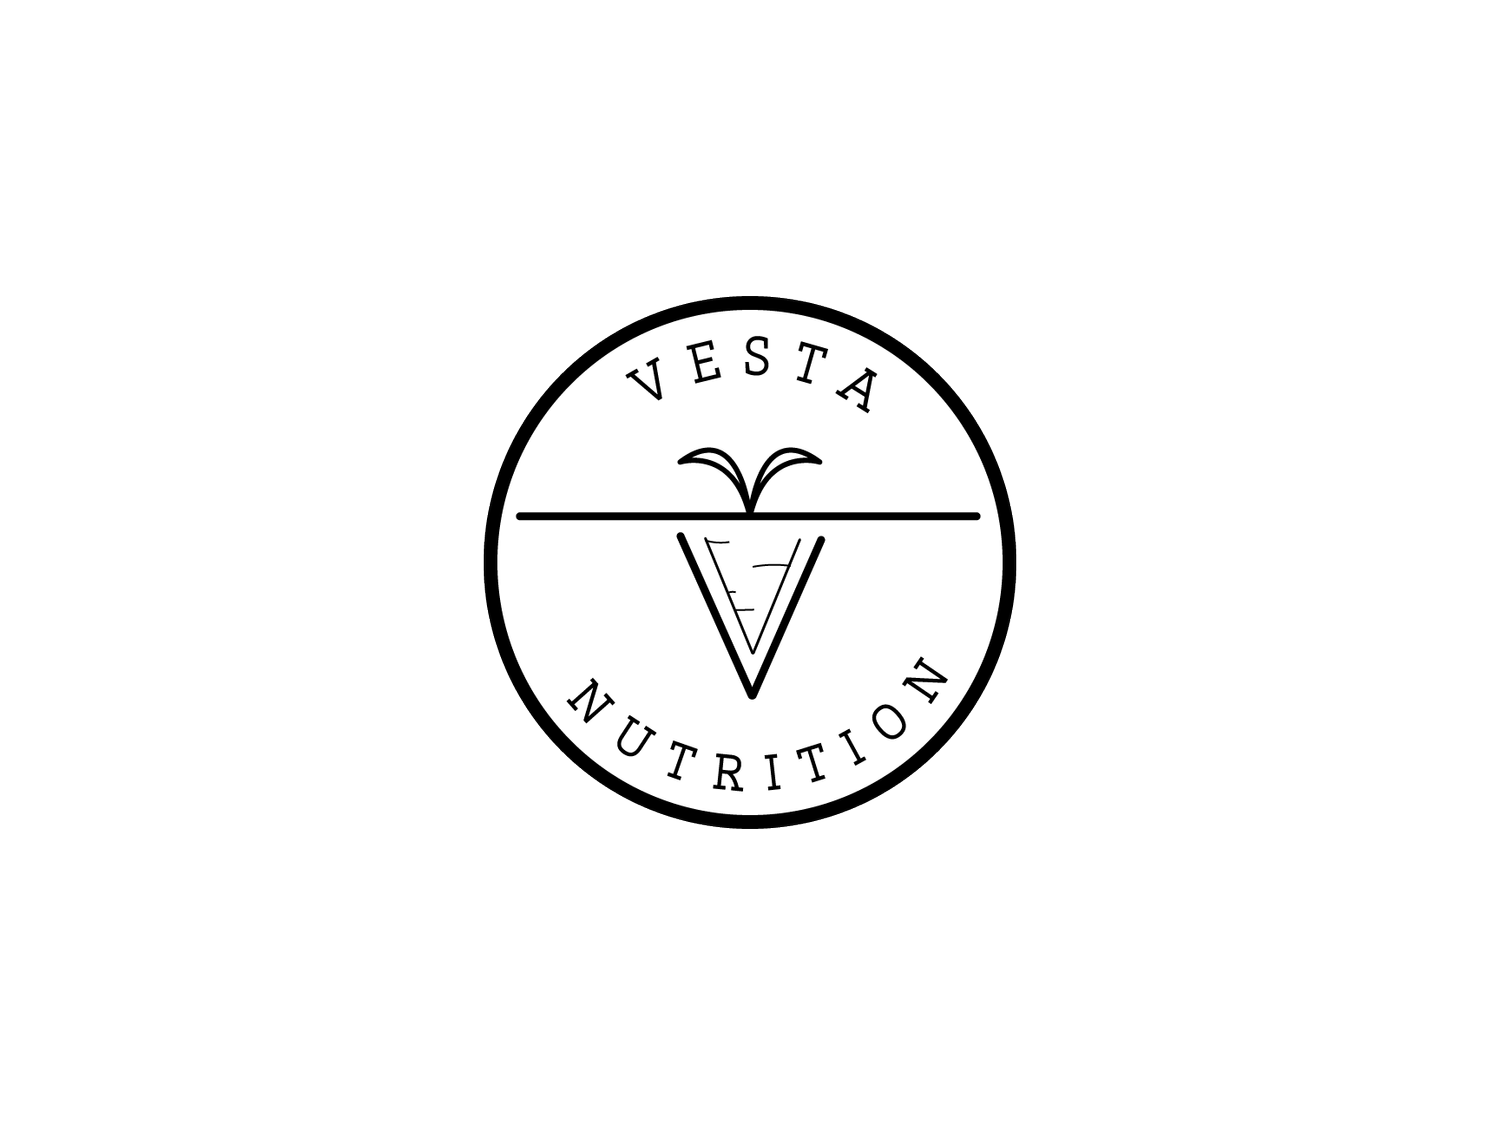 Vesta Nutrition, LLC